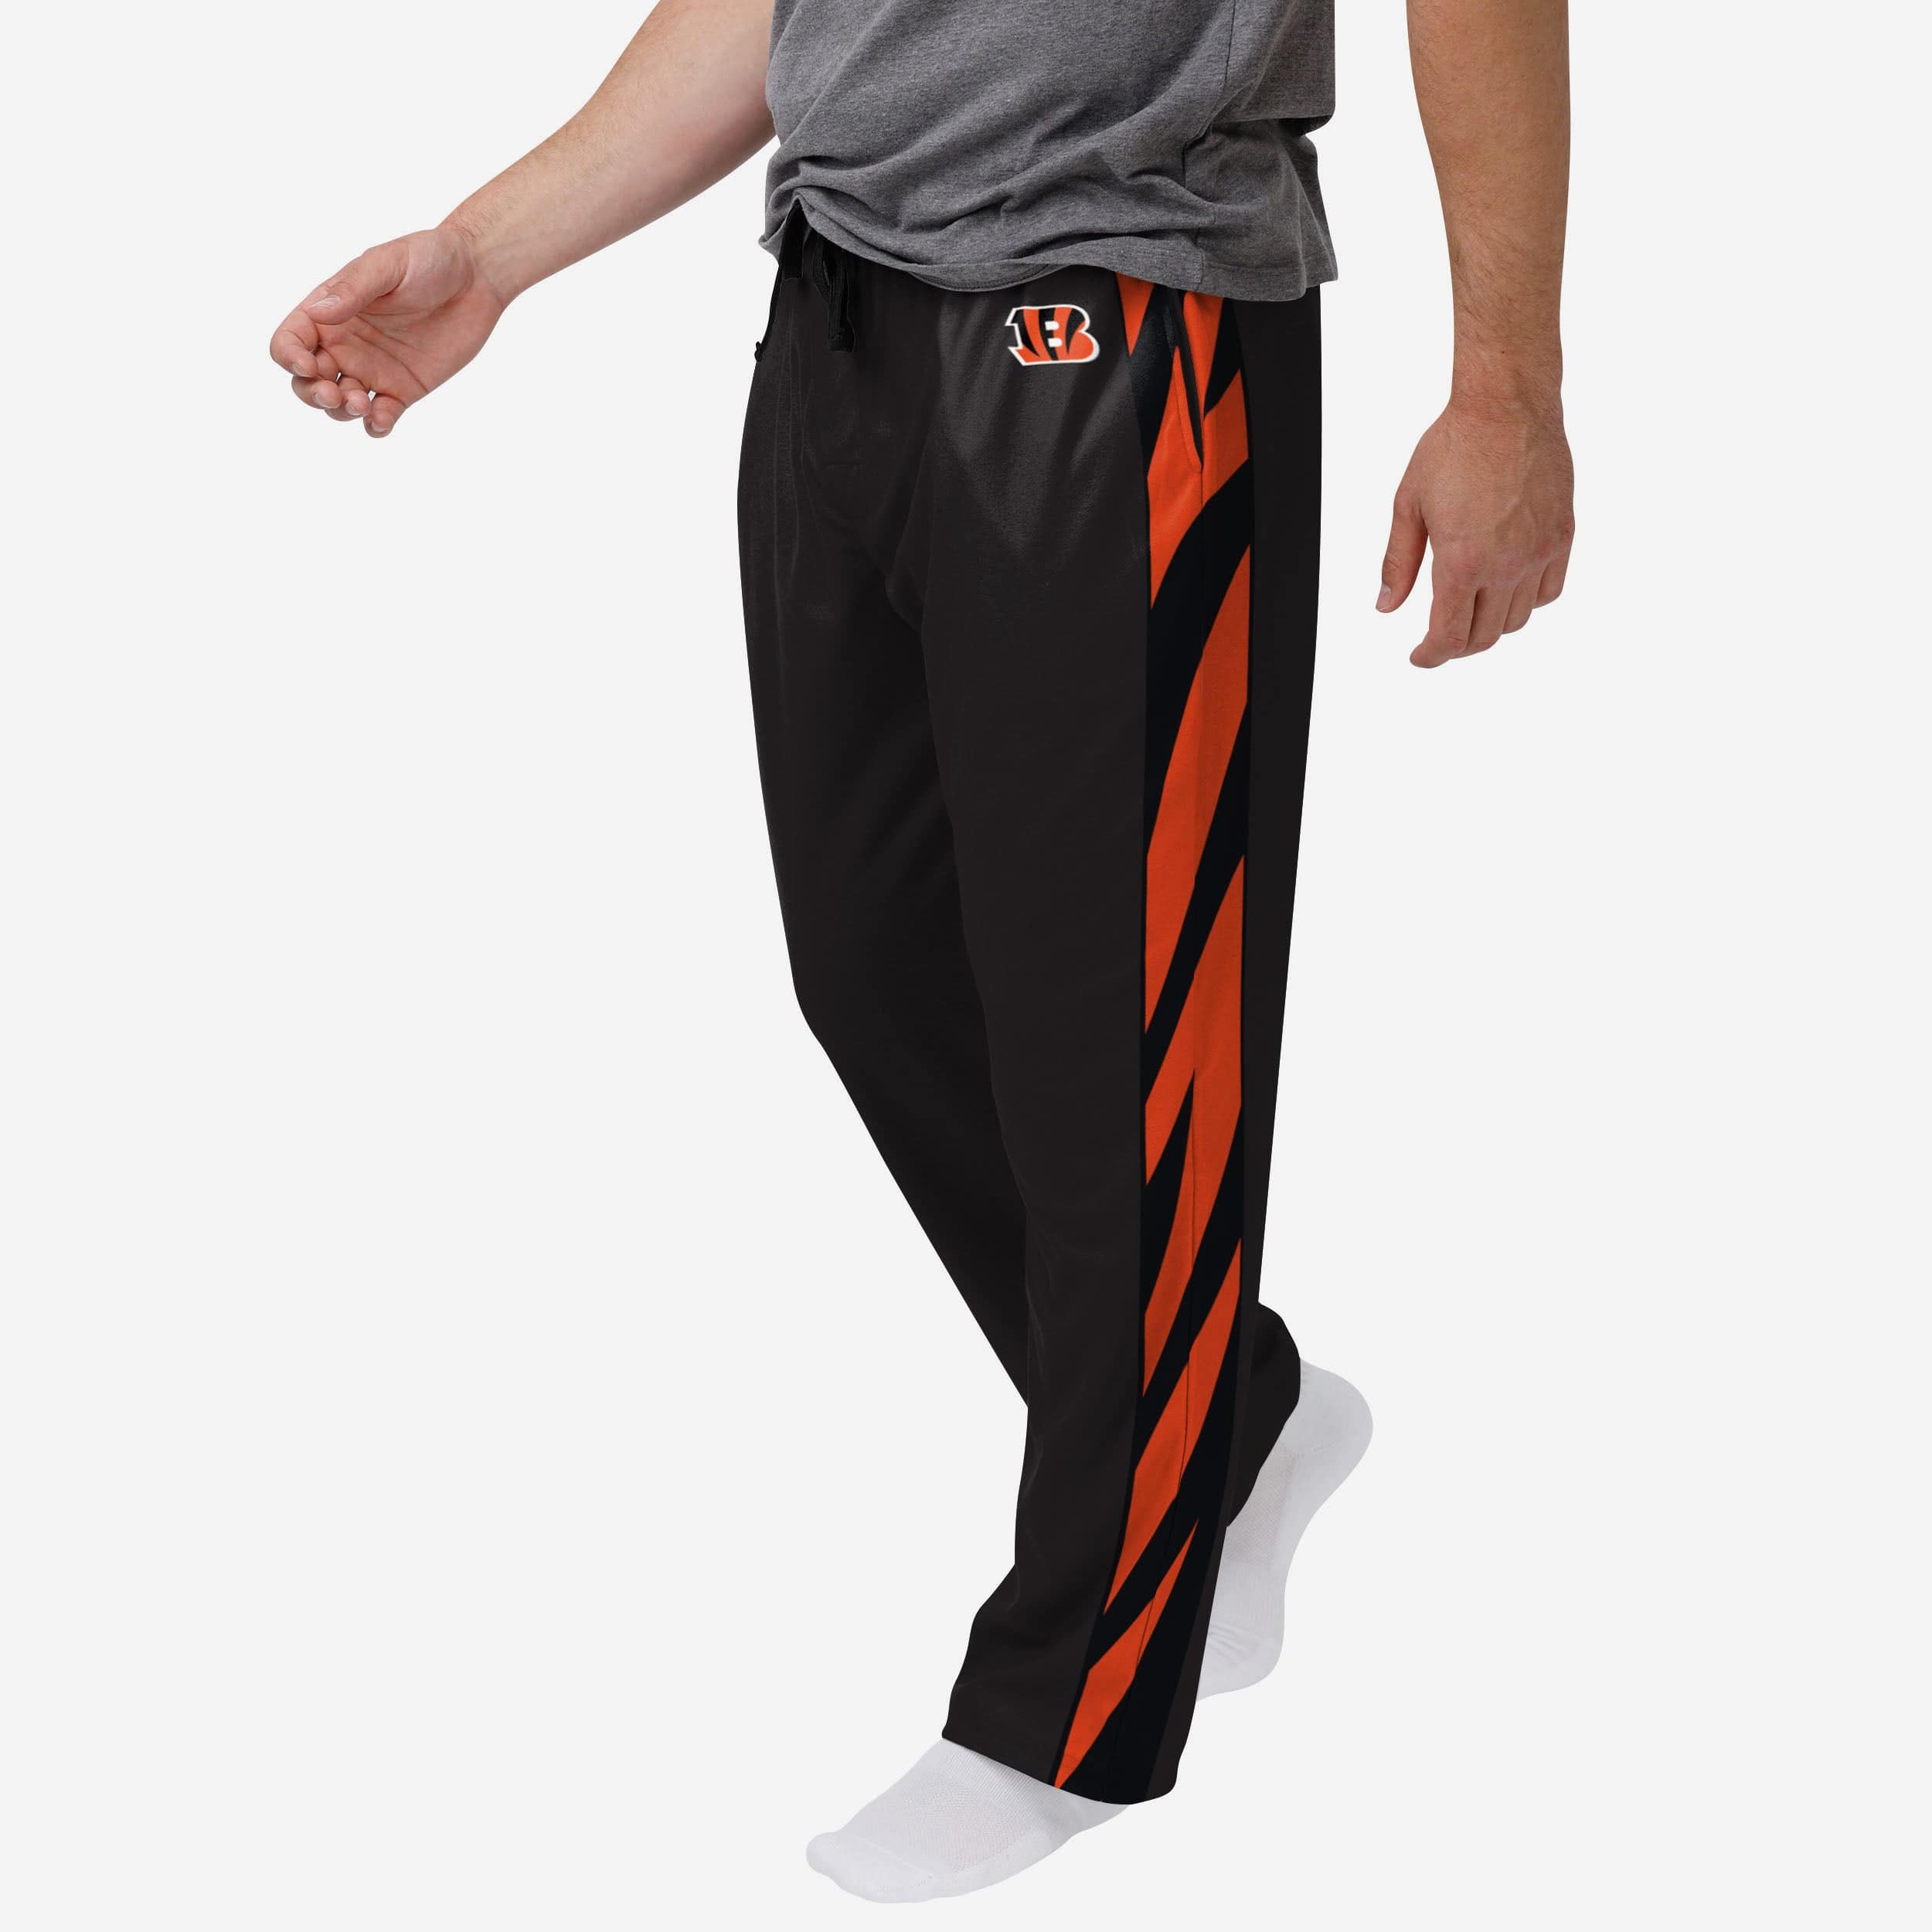 Men CincinnatiBengalsFootball Pants Printed Fashion Casual